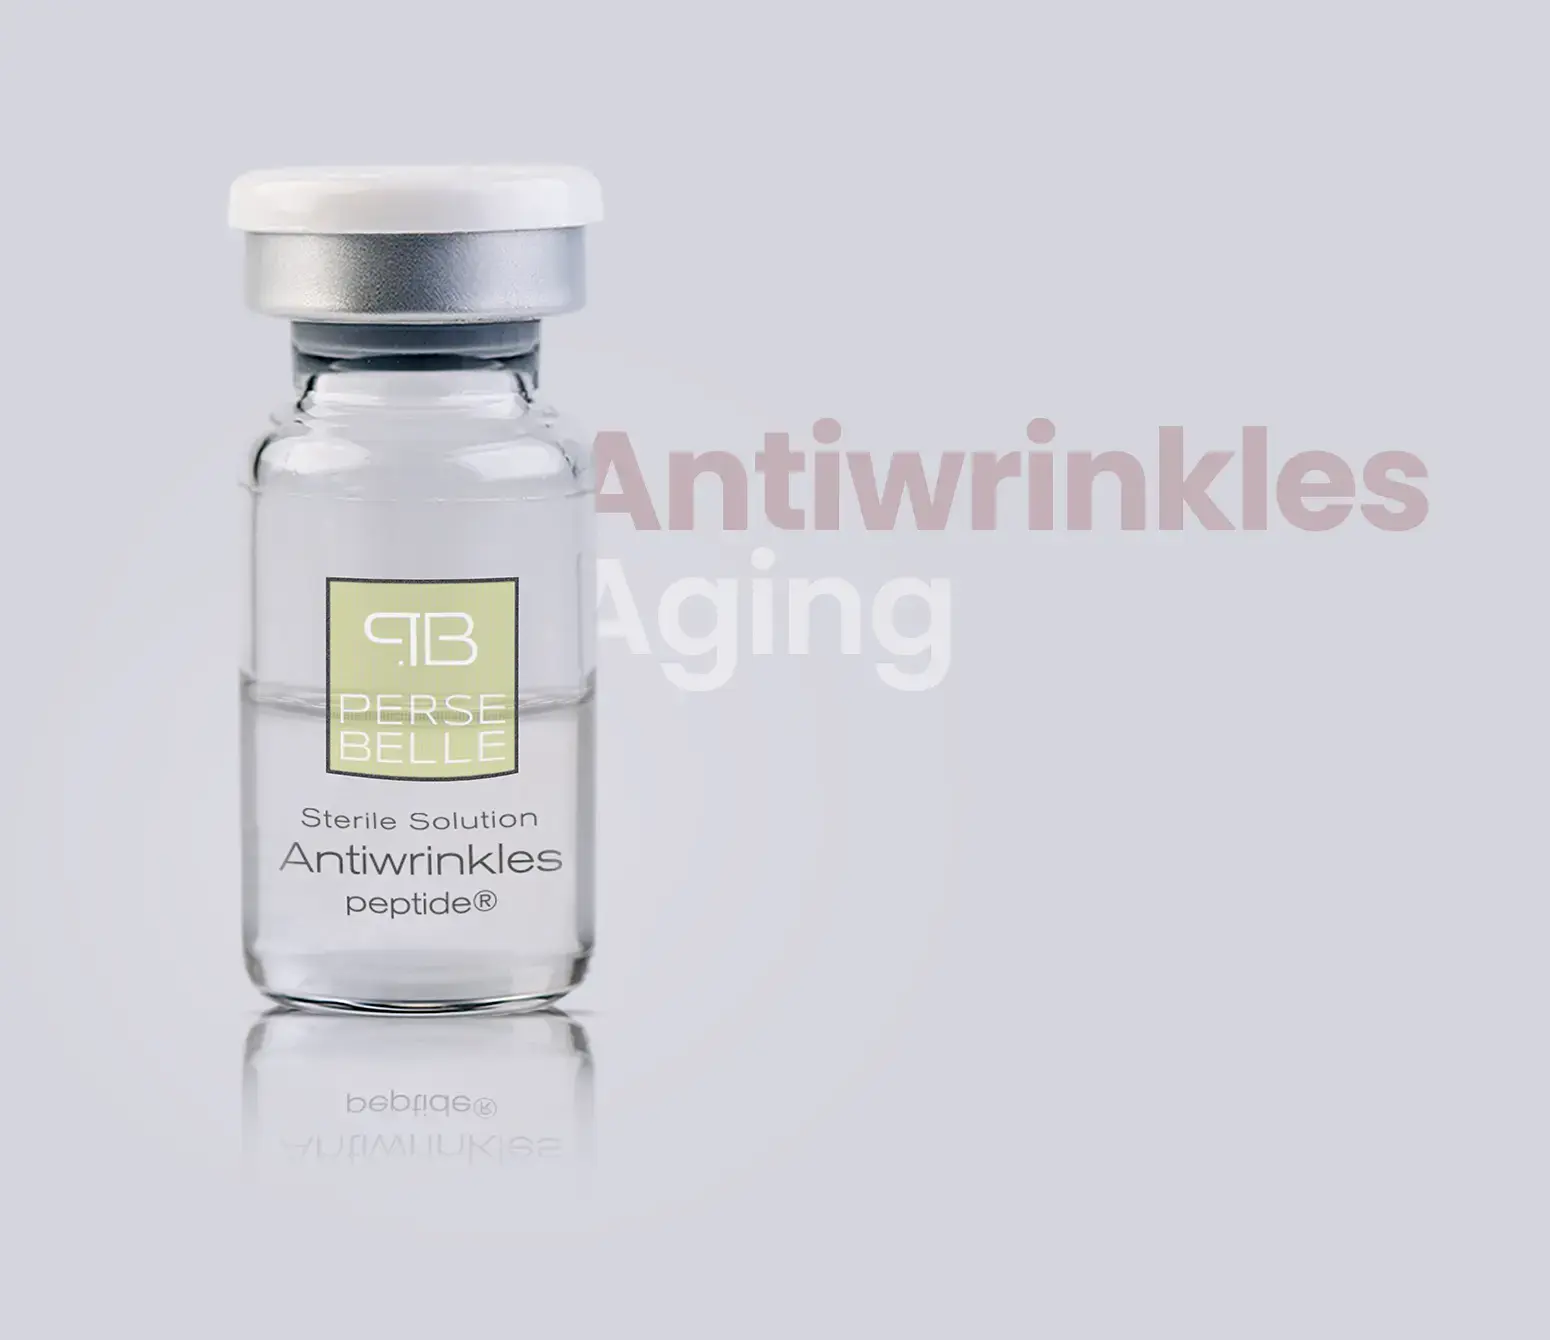 Antiwrinkles- Aging- Persebelle